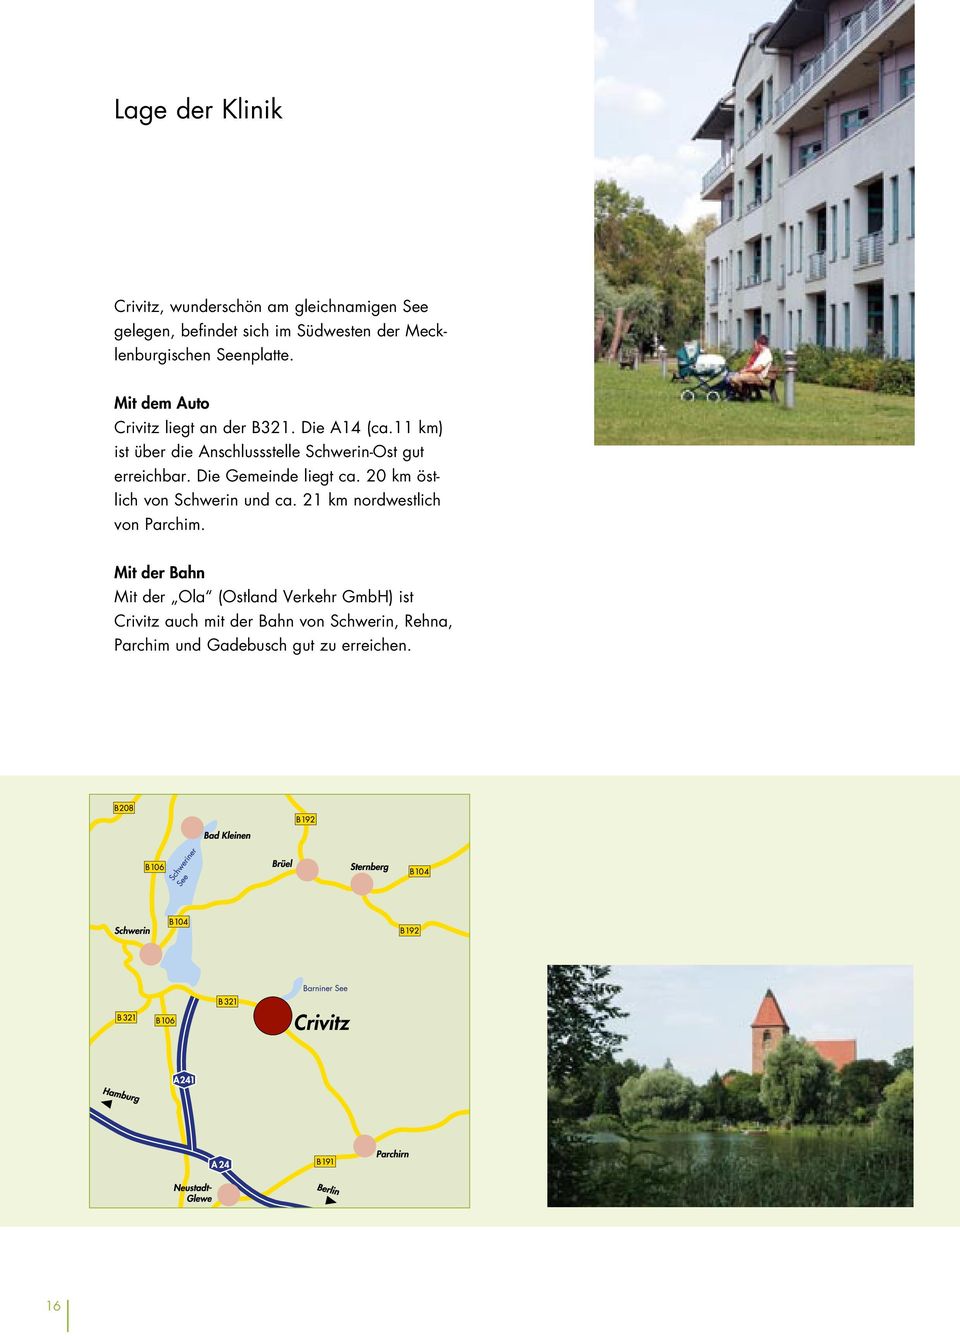 11 km) ist über die Anschlussstelle Schwerin-Ost gut erreichbar. Die Gemeinde liegt ca.